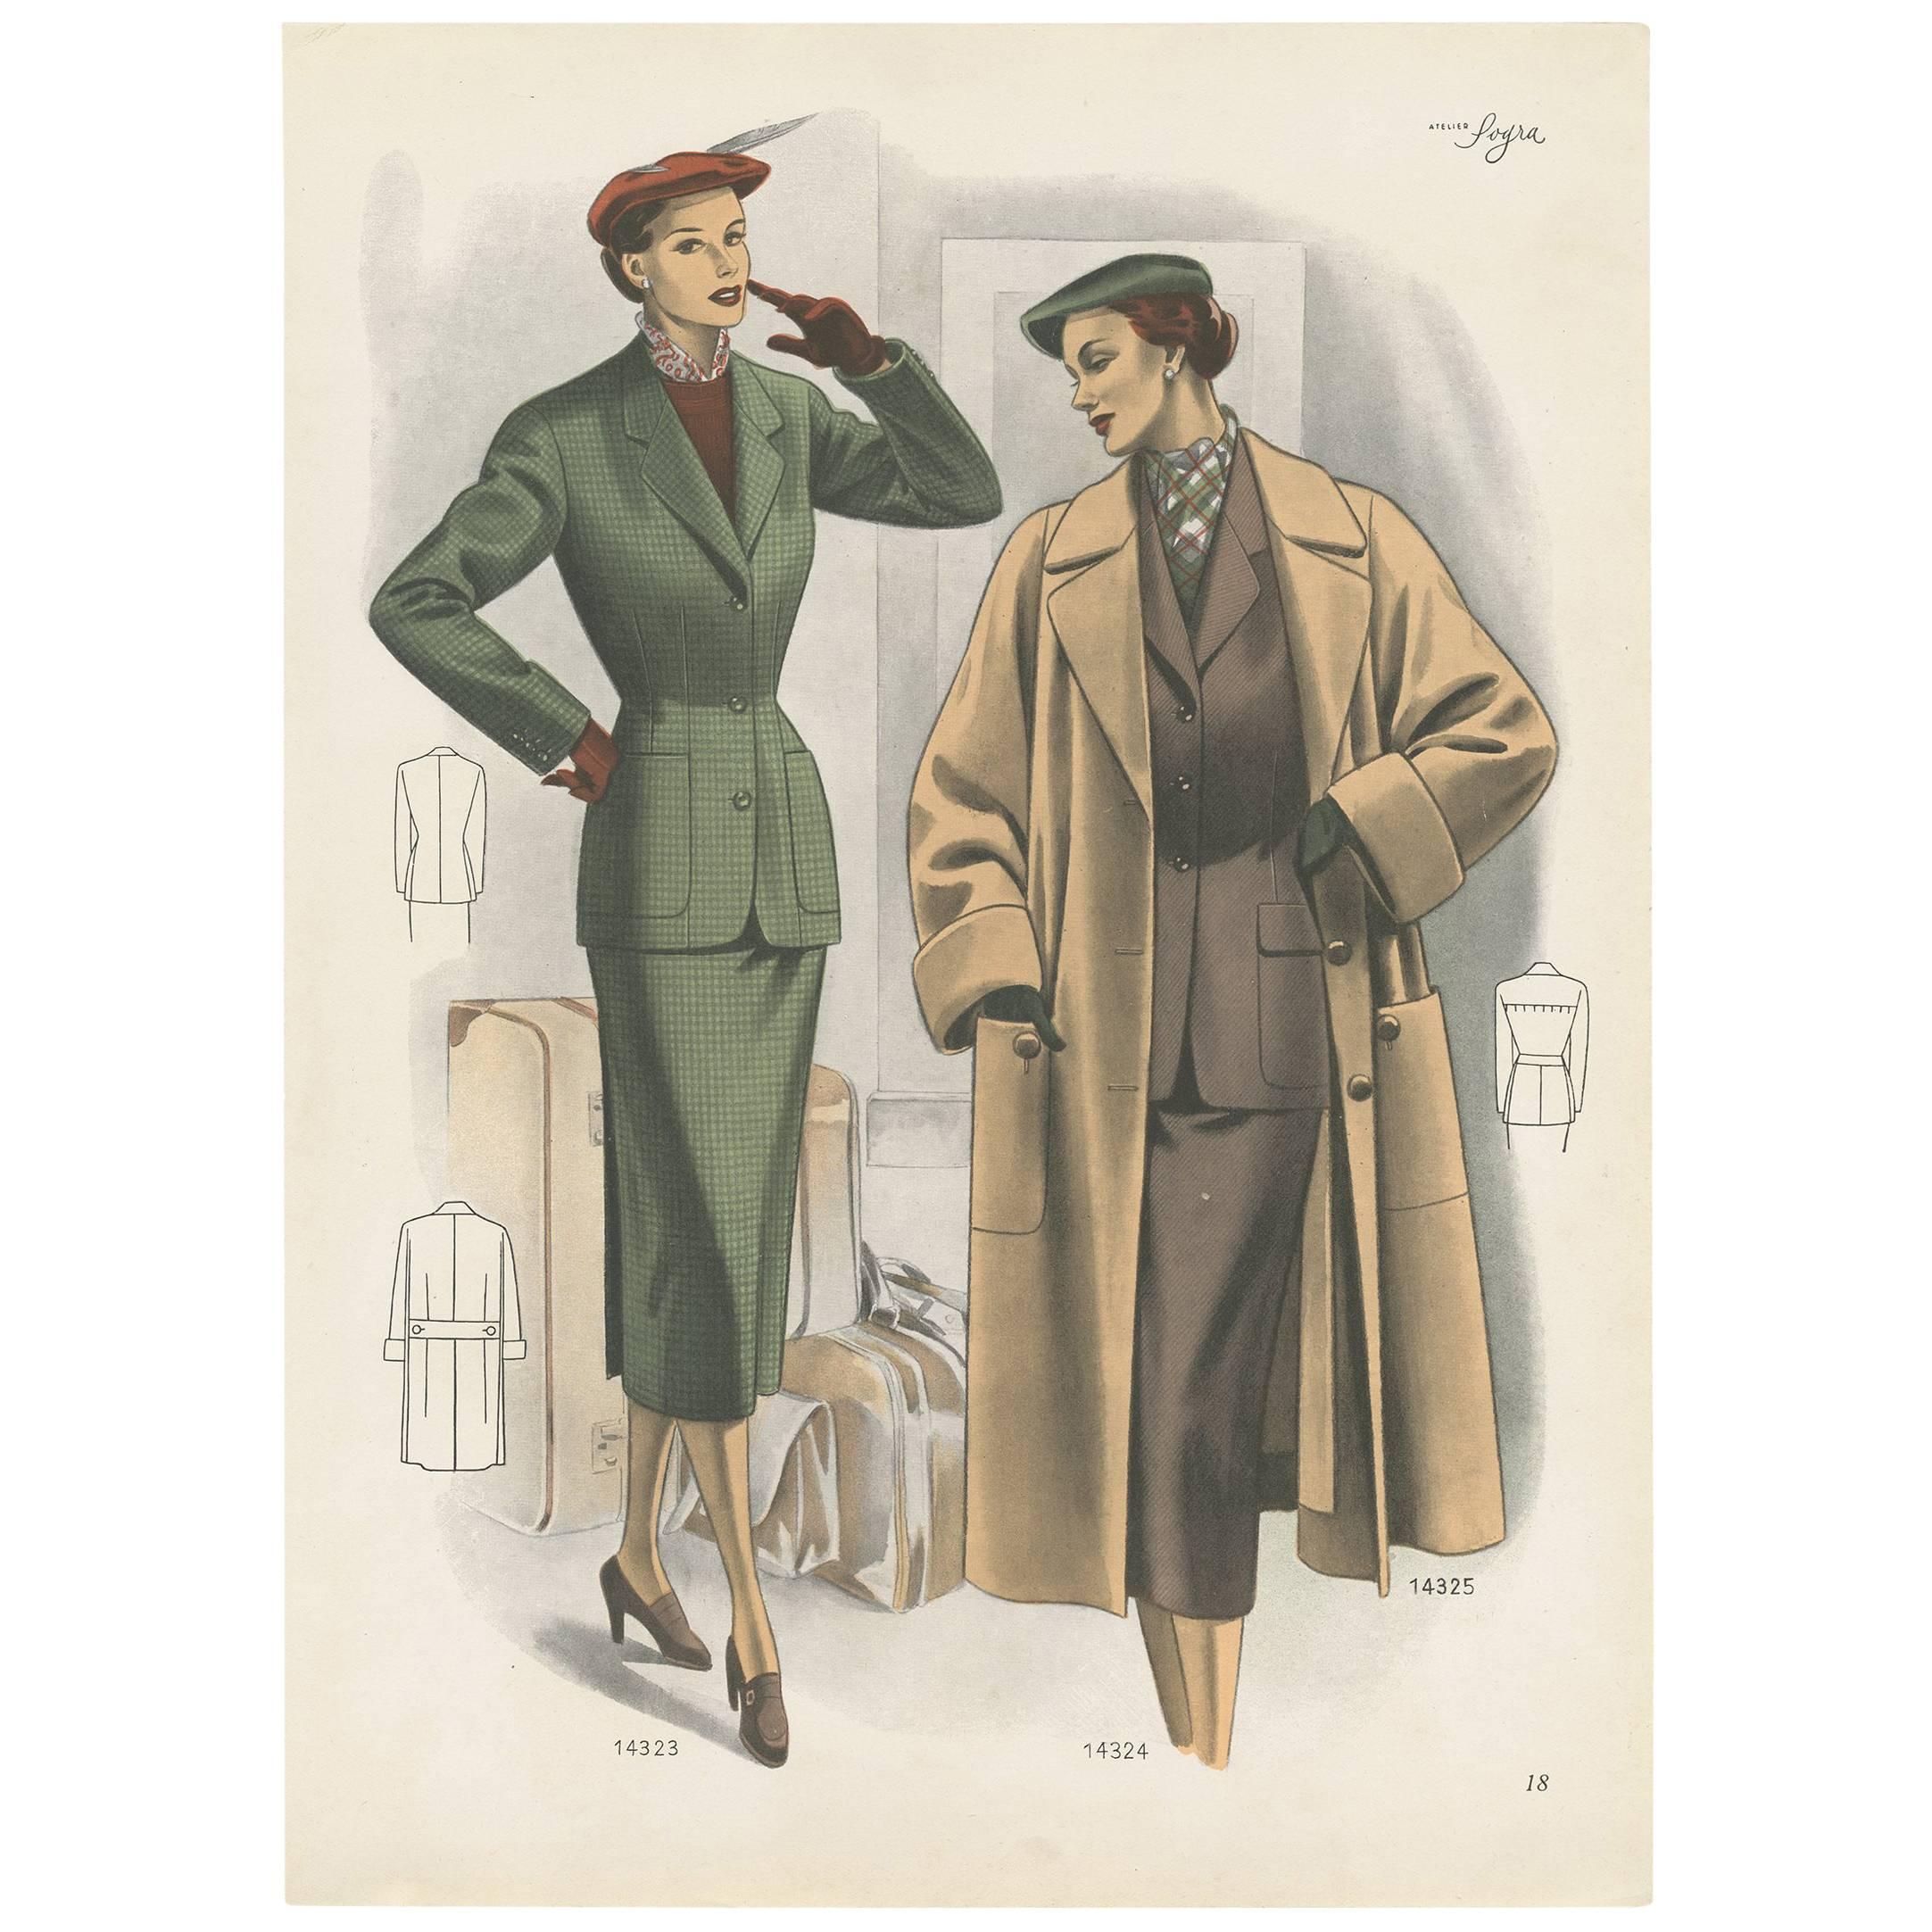 Affiche de mode vintage « pp. 14323 » publiée dans Ladies Styles, 1952